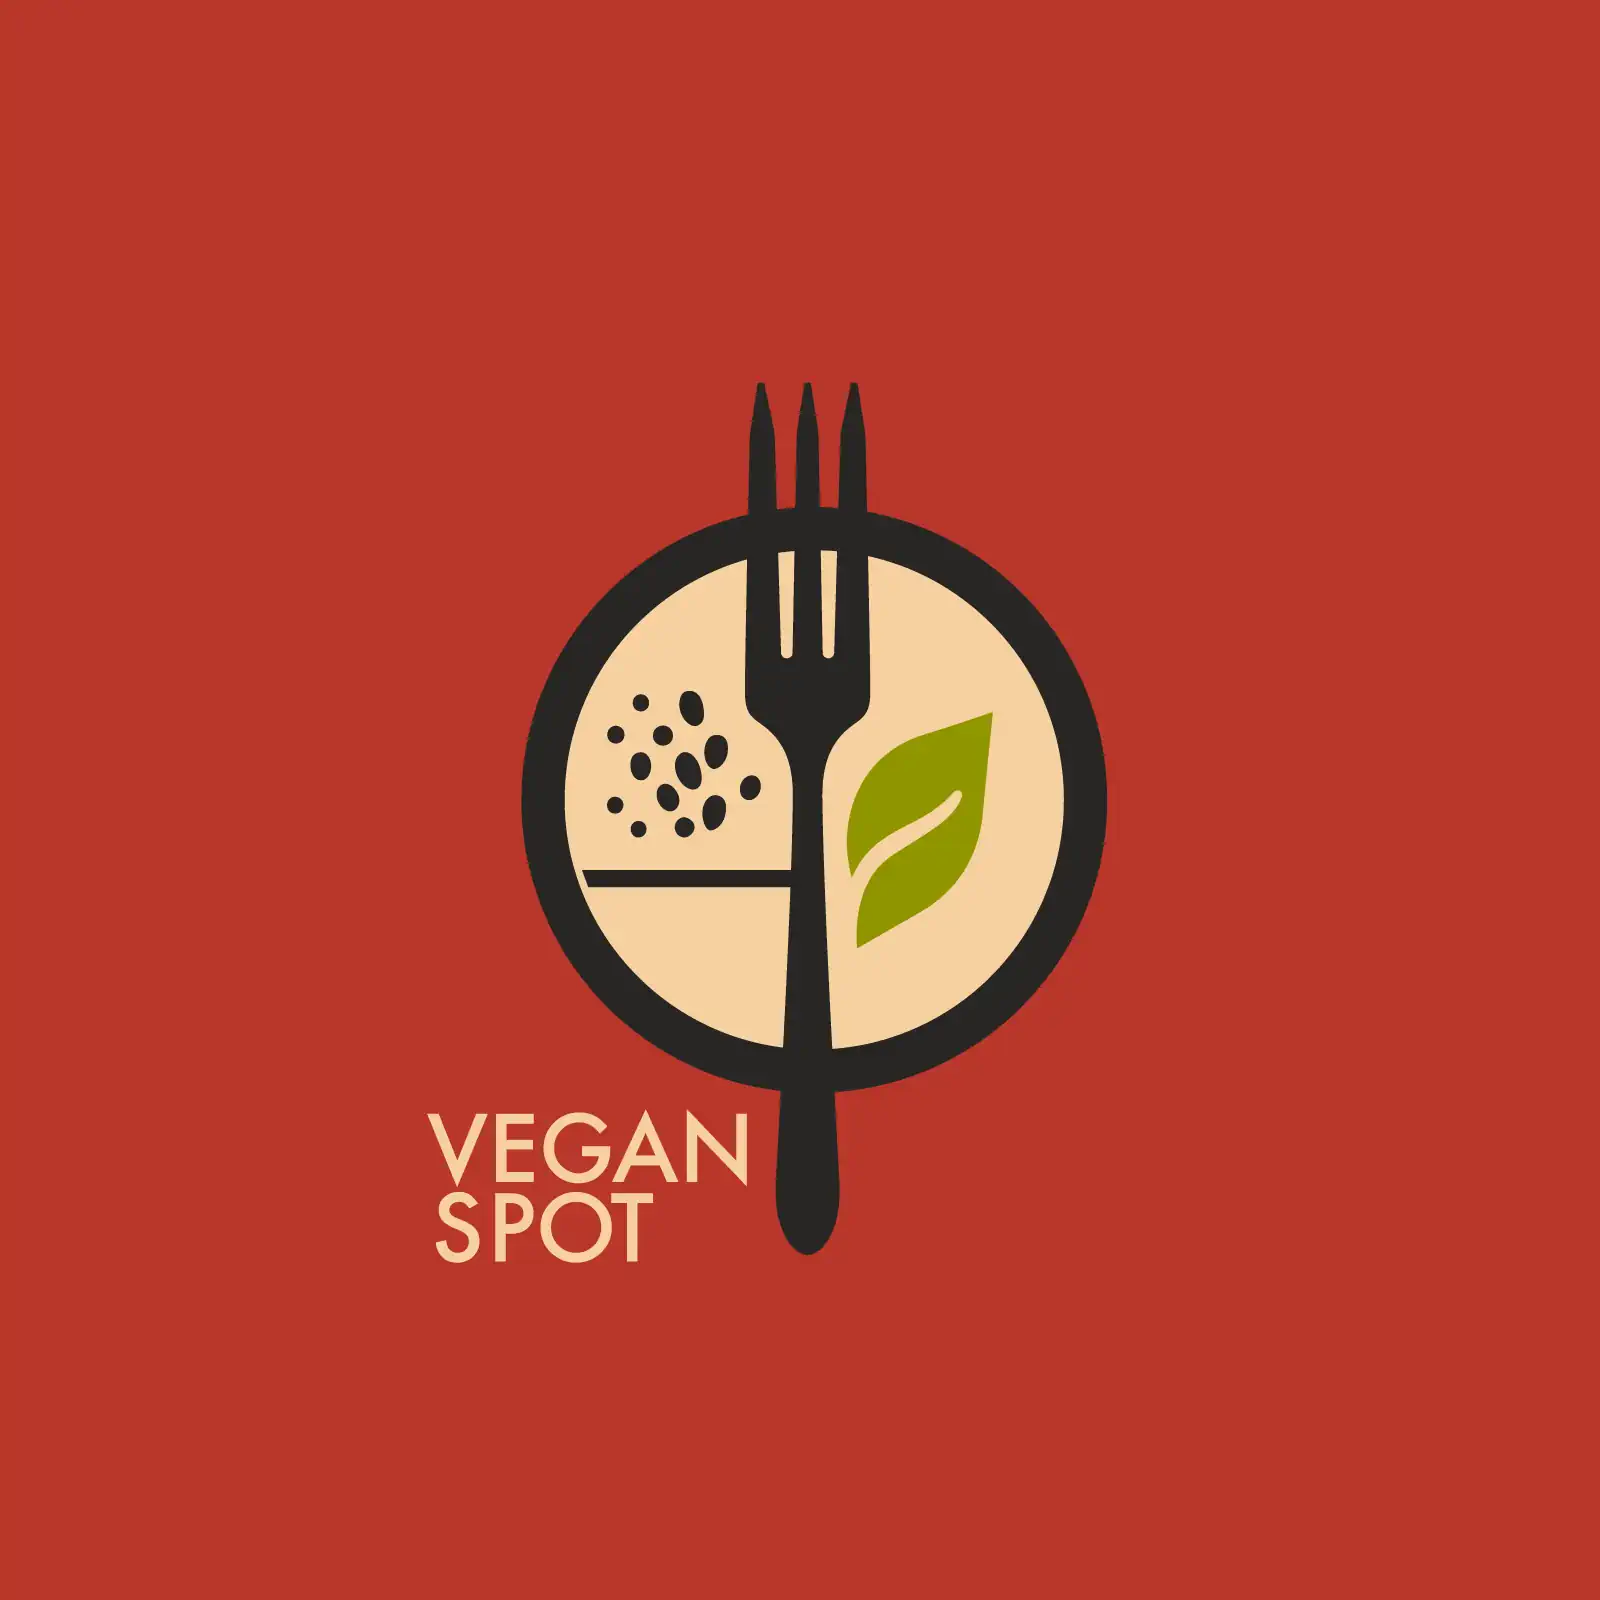 Vegan spot restaurant logo